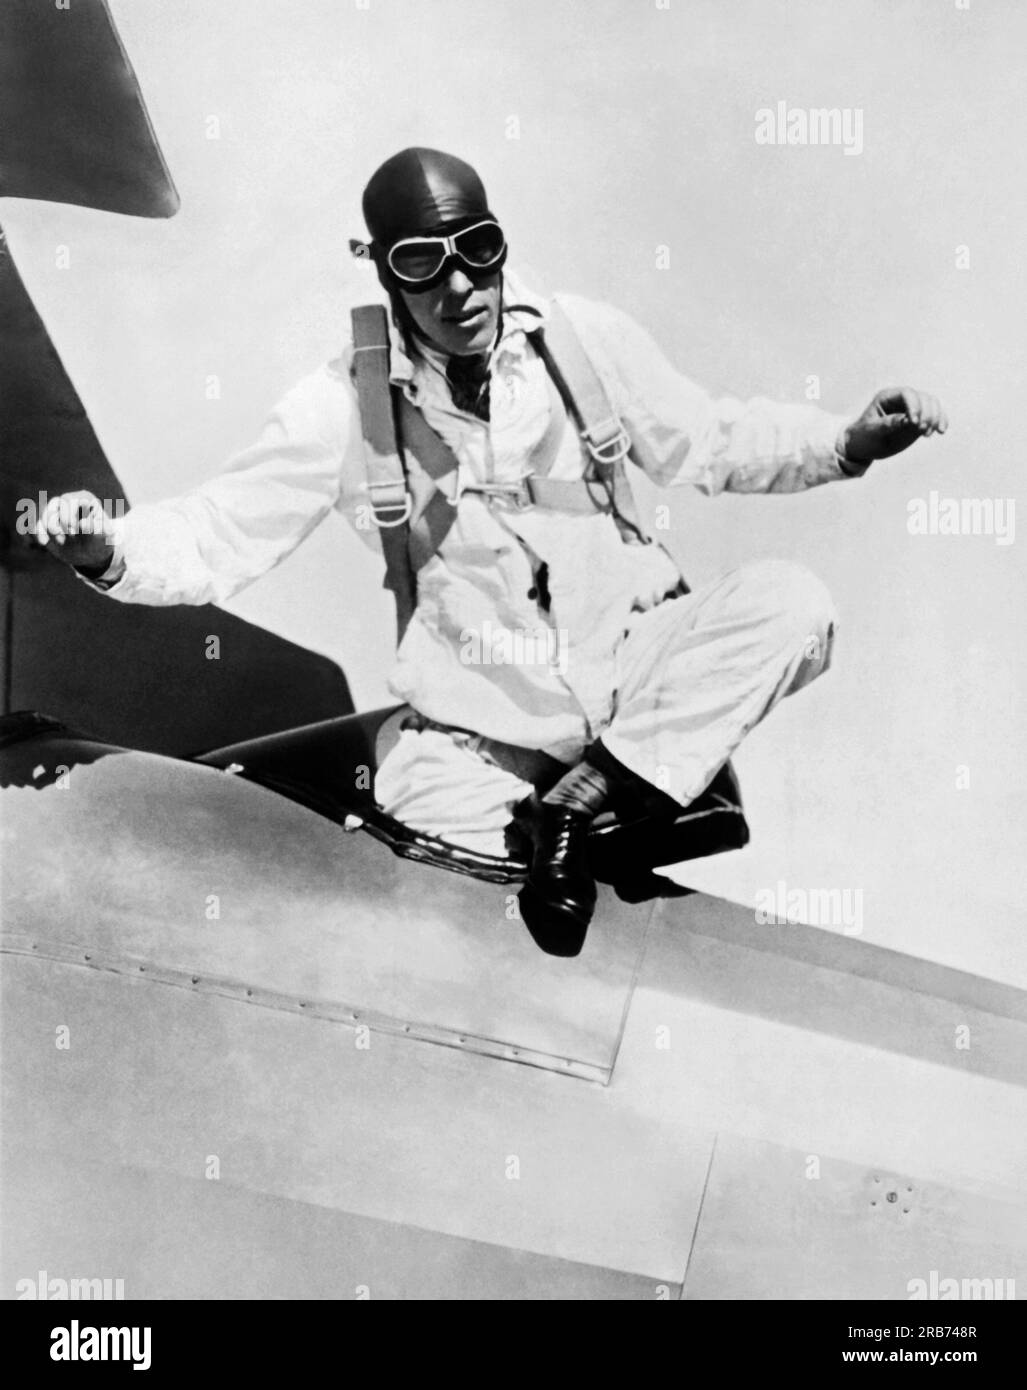 Santa Monica, Californie : 27 novembre 1927 Ralph Douglas, de San Diego, sautera d'une altitude de 15 000 pieds et tombera en chute libre de 10 000 pieds avant d'ouvrir son parachute, brisant ainsi l'ancien record de chute libre de 4200 pieds. Il utilisera un chronomètre pour chronométrer la plongée, estimant que cela prendra de 25 à 28 secondes. Ici, il est prêt à sauter par-dessus bord. Banque D'Images